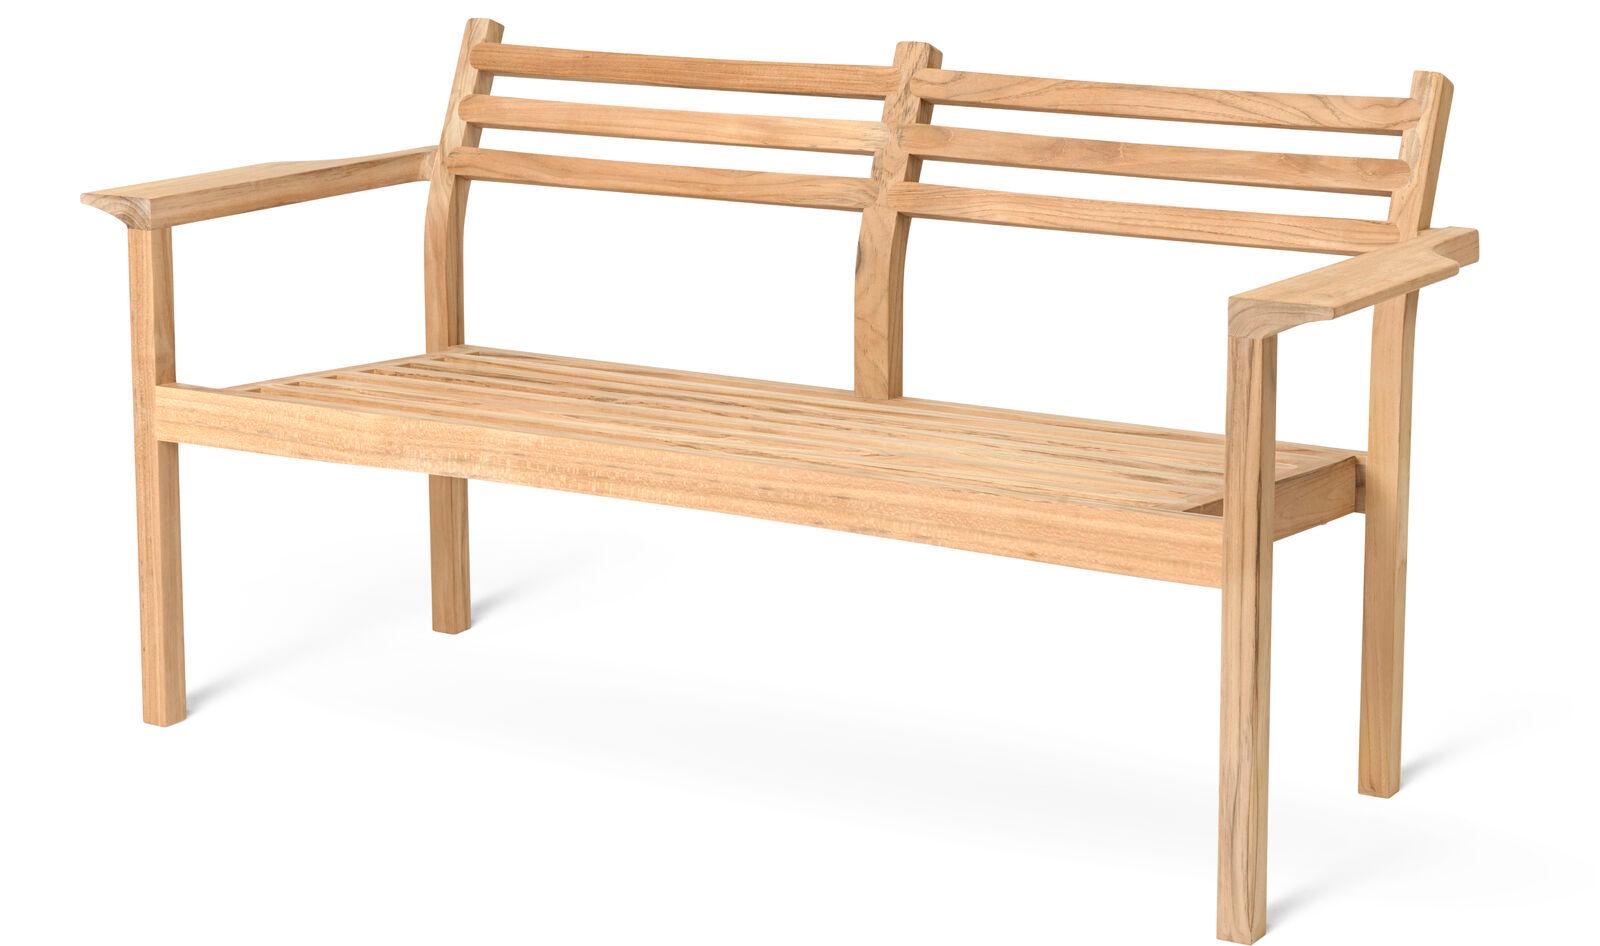 Das AH701 Outdoor Lounge Sofa wurde von Alfred Homann im Jahr 2022 als Teil der AH Outdoor Serie entworfen. Es zeichnet sich durch strenge Linien aus, die elegant mit weichen, abgerundeten Details kombiniert werden. Das Sofa bietet Platz für zwei